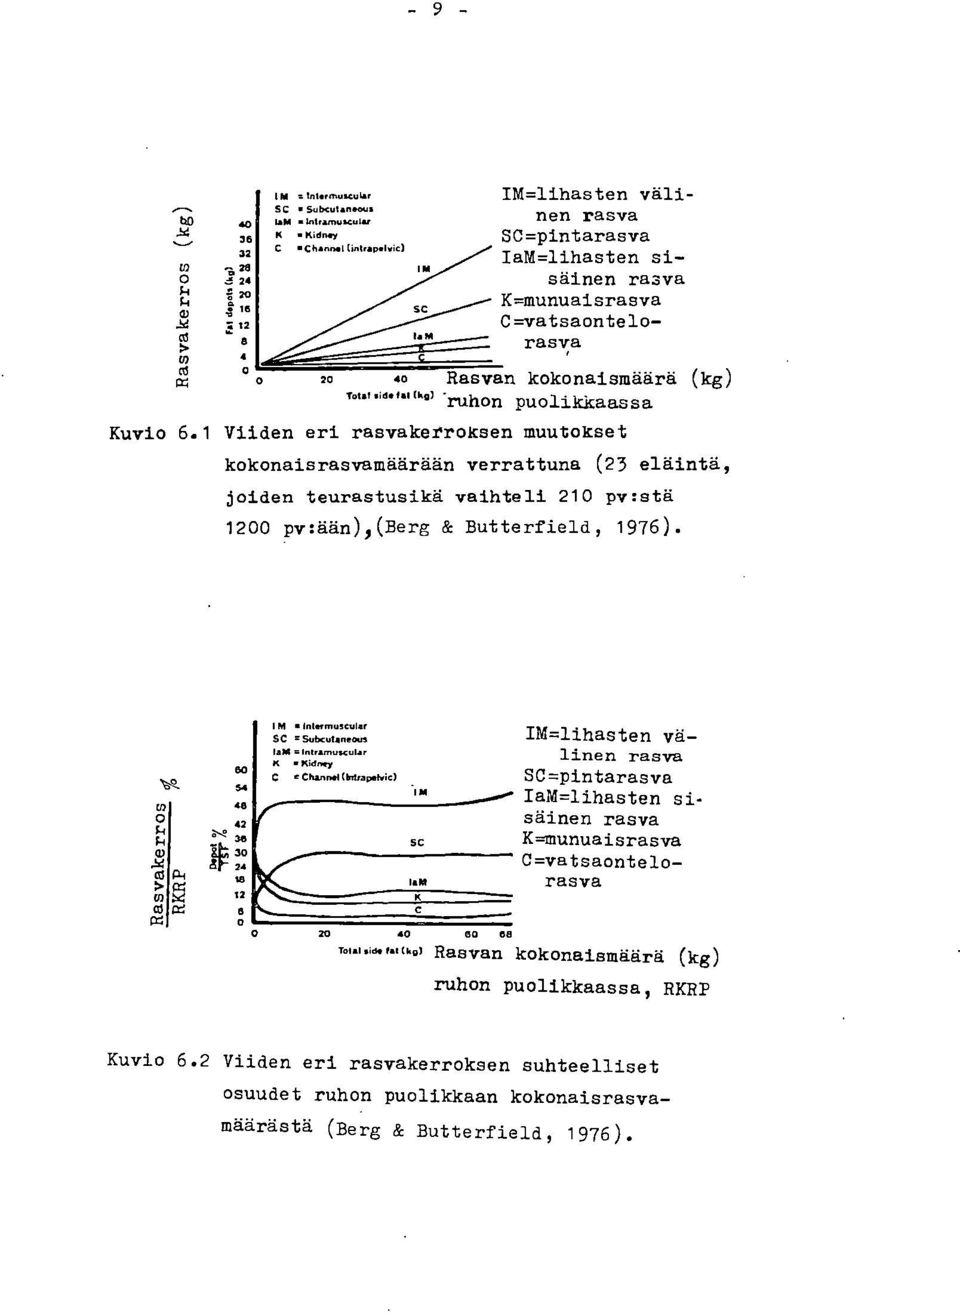 1 Viiden eri rasvakerroksen muutokset kokonaisrasvamäärään verrattuna (23 eläintä, joiden teurastusikä vaihteli 210 pv:stä 1200 pv:ään),(berg & Butterfield, 1976).